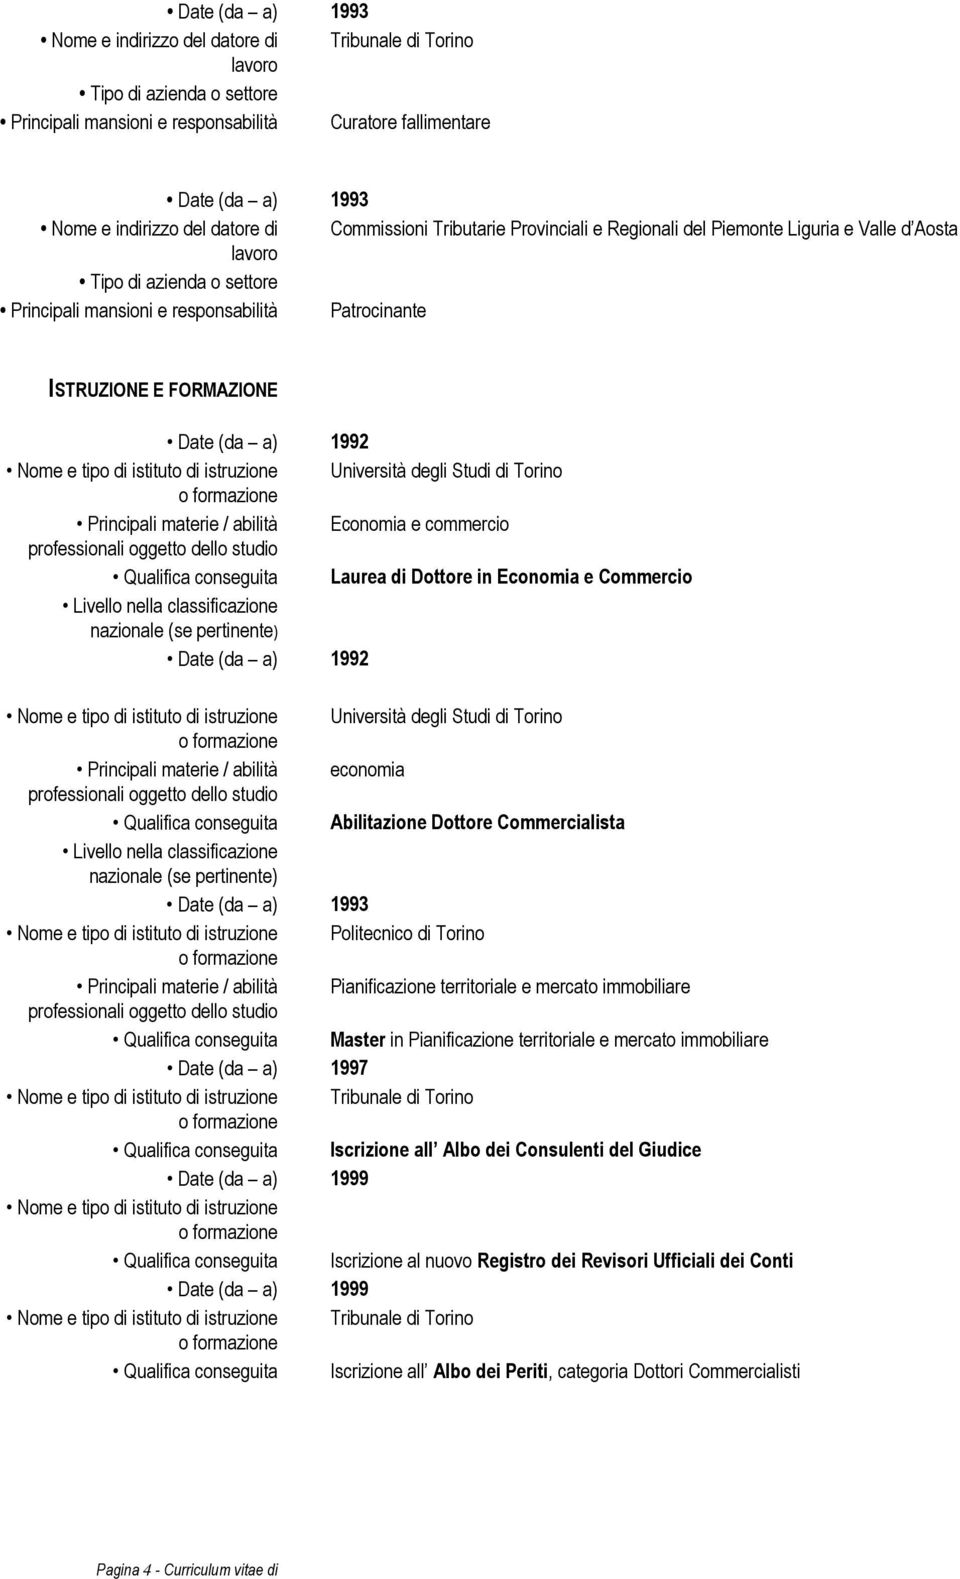 Commercio Livello nella classificazione nazionale (se pertinente) 1992 Nome e tipo di istituto di istruzione Università degli Studi di Torino Principali materie / abilità economia professionali